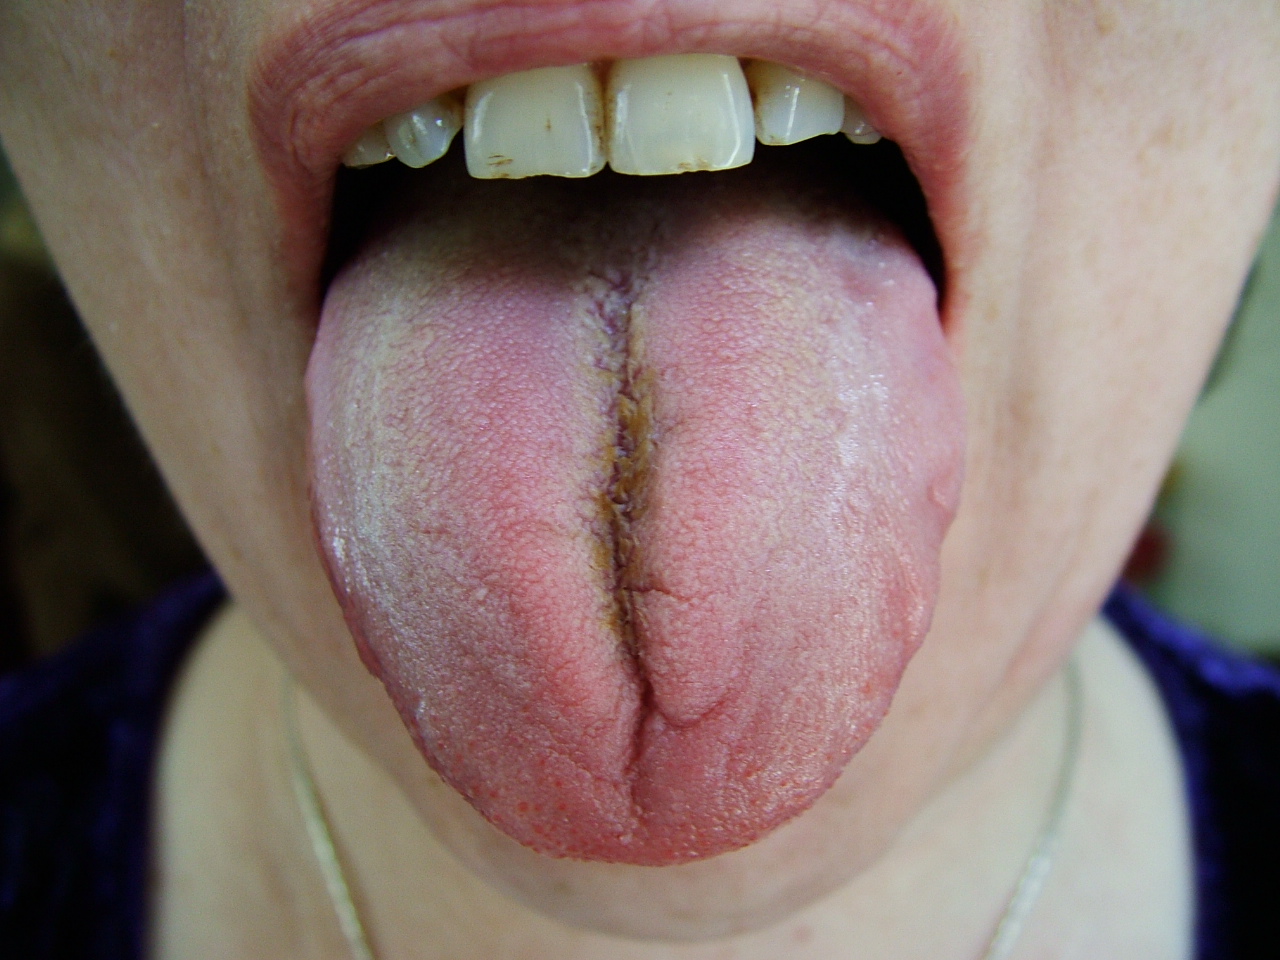 manchas cafes en la punta de la lengua